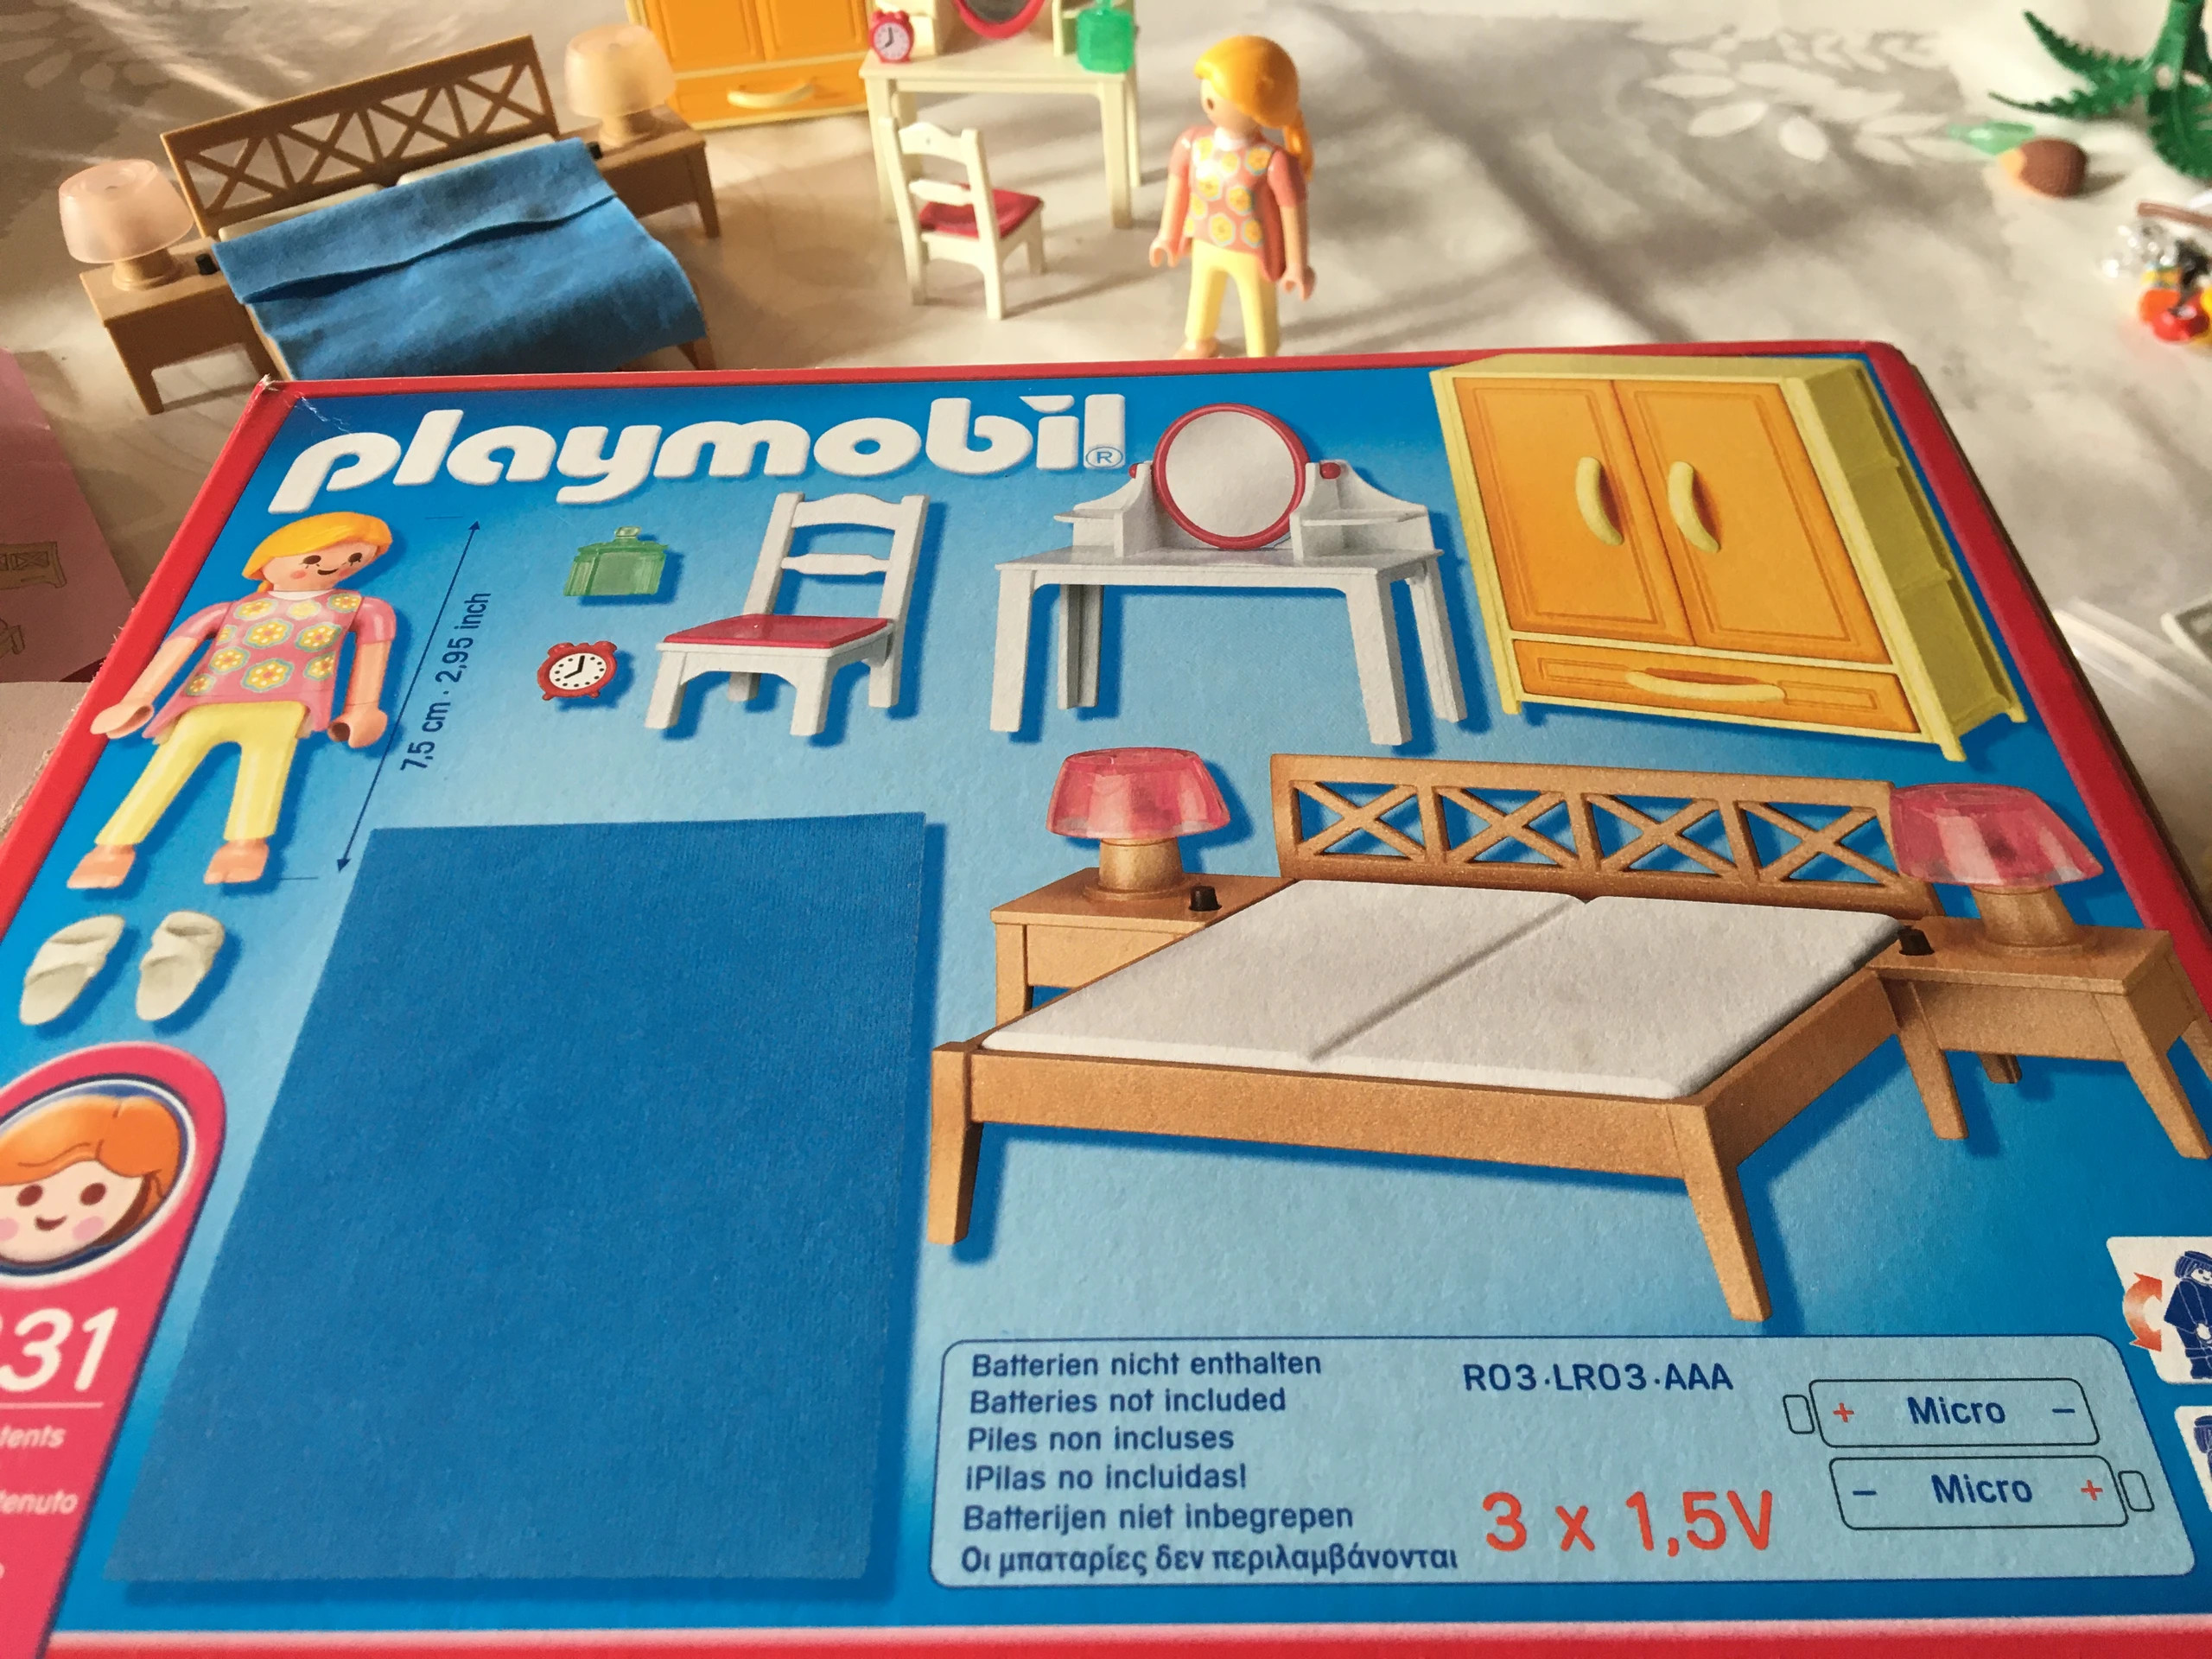 Playmobil 5331 - Chambre à coucher des parents avec lumière - Comparer avec